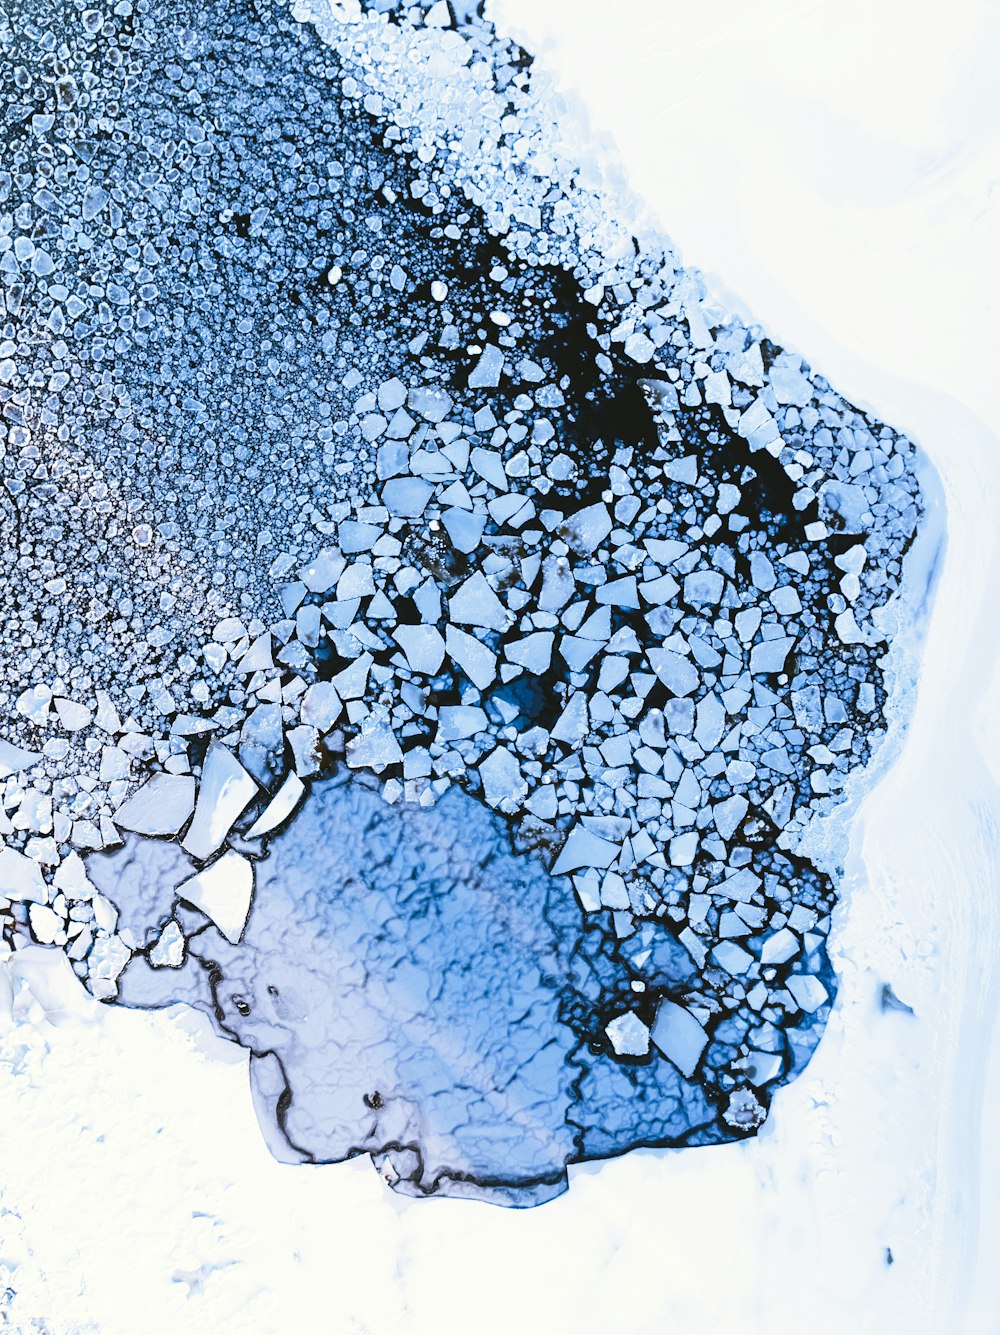 Una vista aérea del hielo y la nieve en el suelo